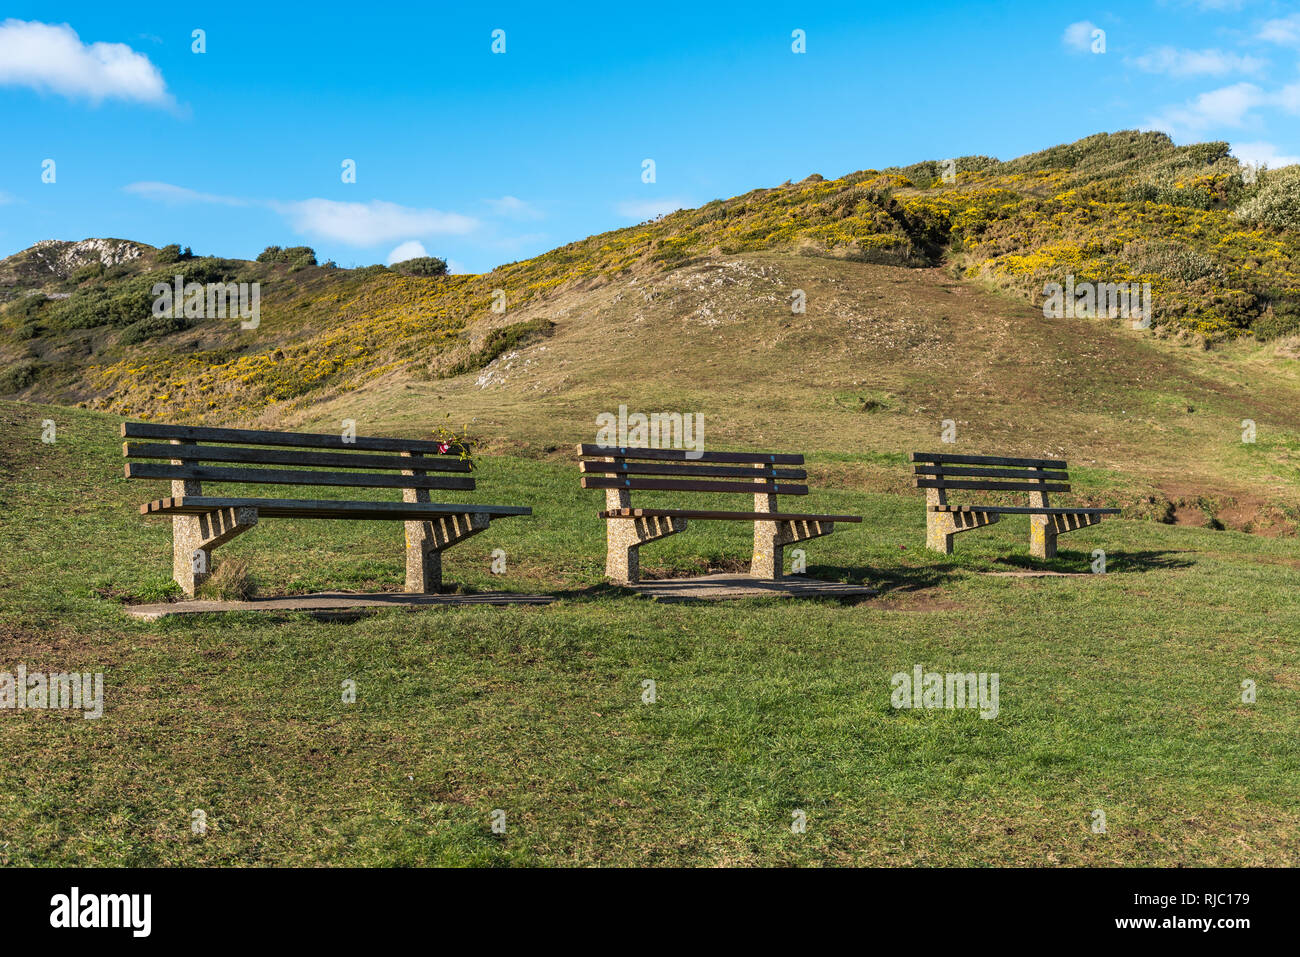 Tres bancos de madera vacías en una fila, se coloca delante de un paisaje de colinas, con flores de color amarillo. Cielo azul y nubes detrás. Con espacio para el texto. Foto de stock